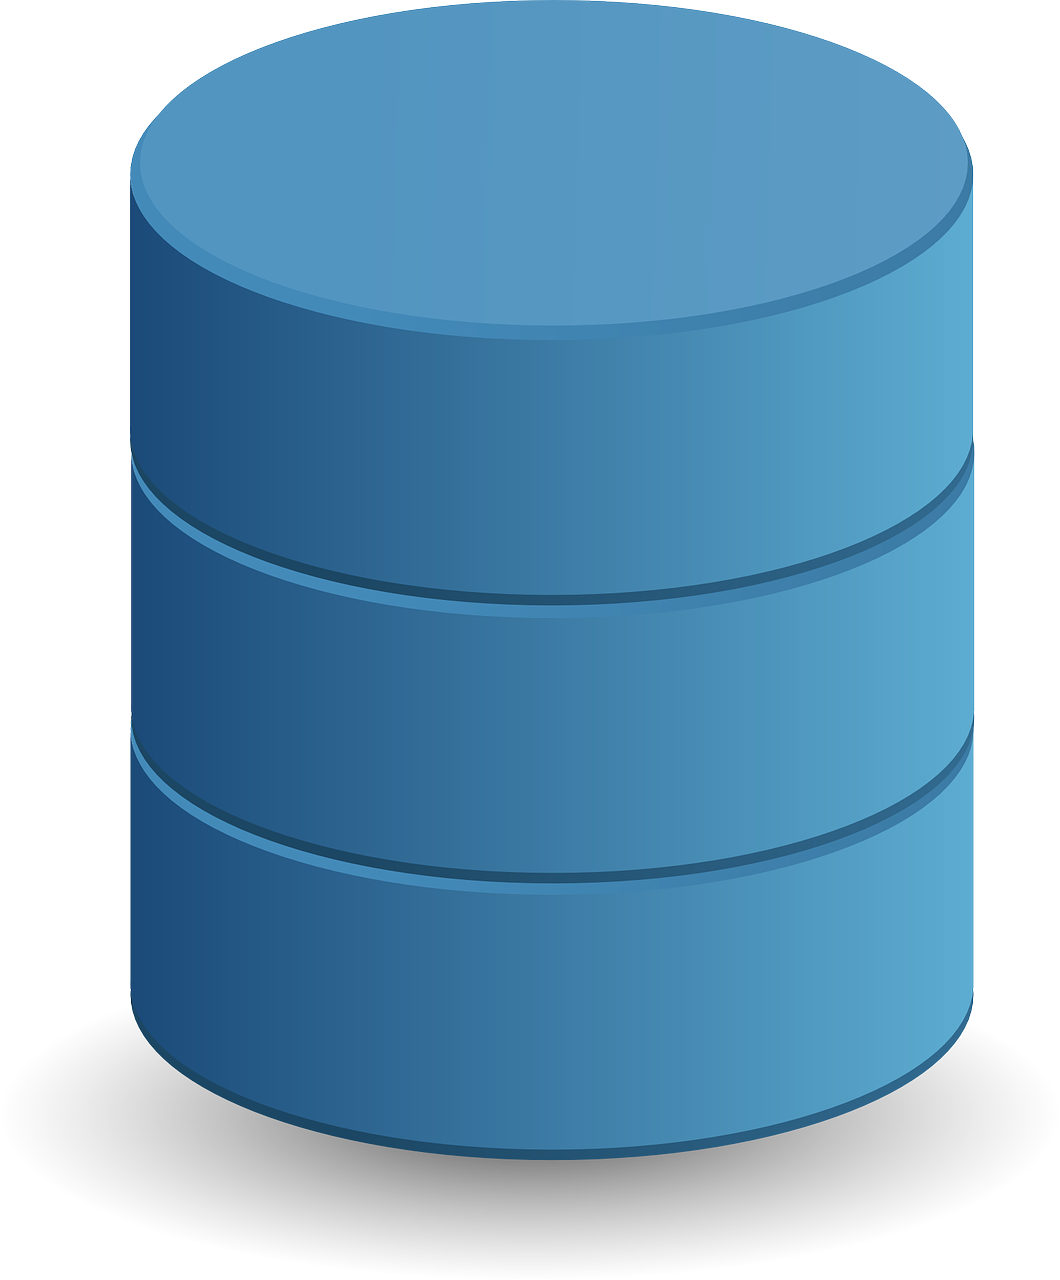 database data storage cylinder free photo